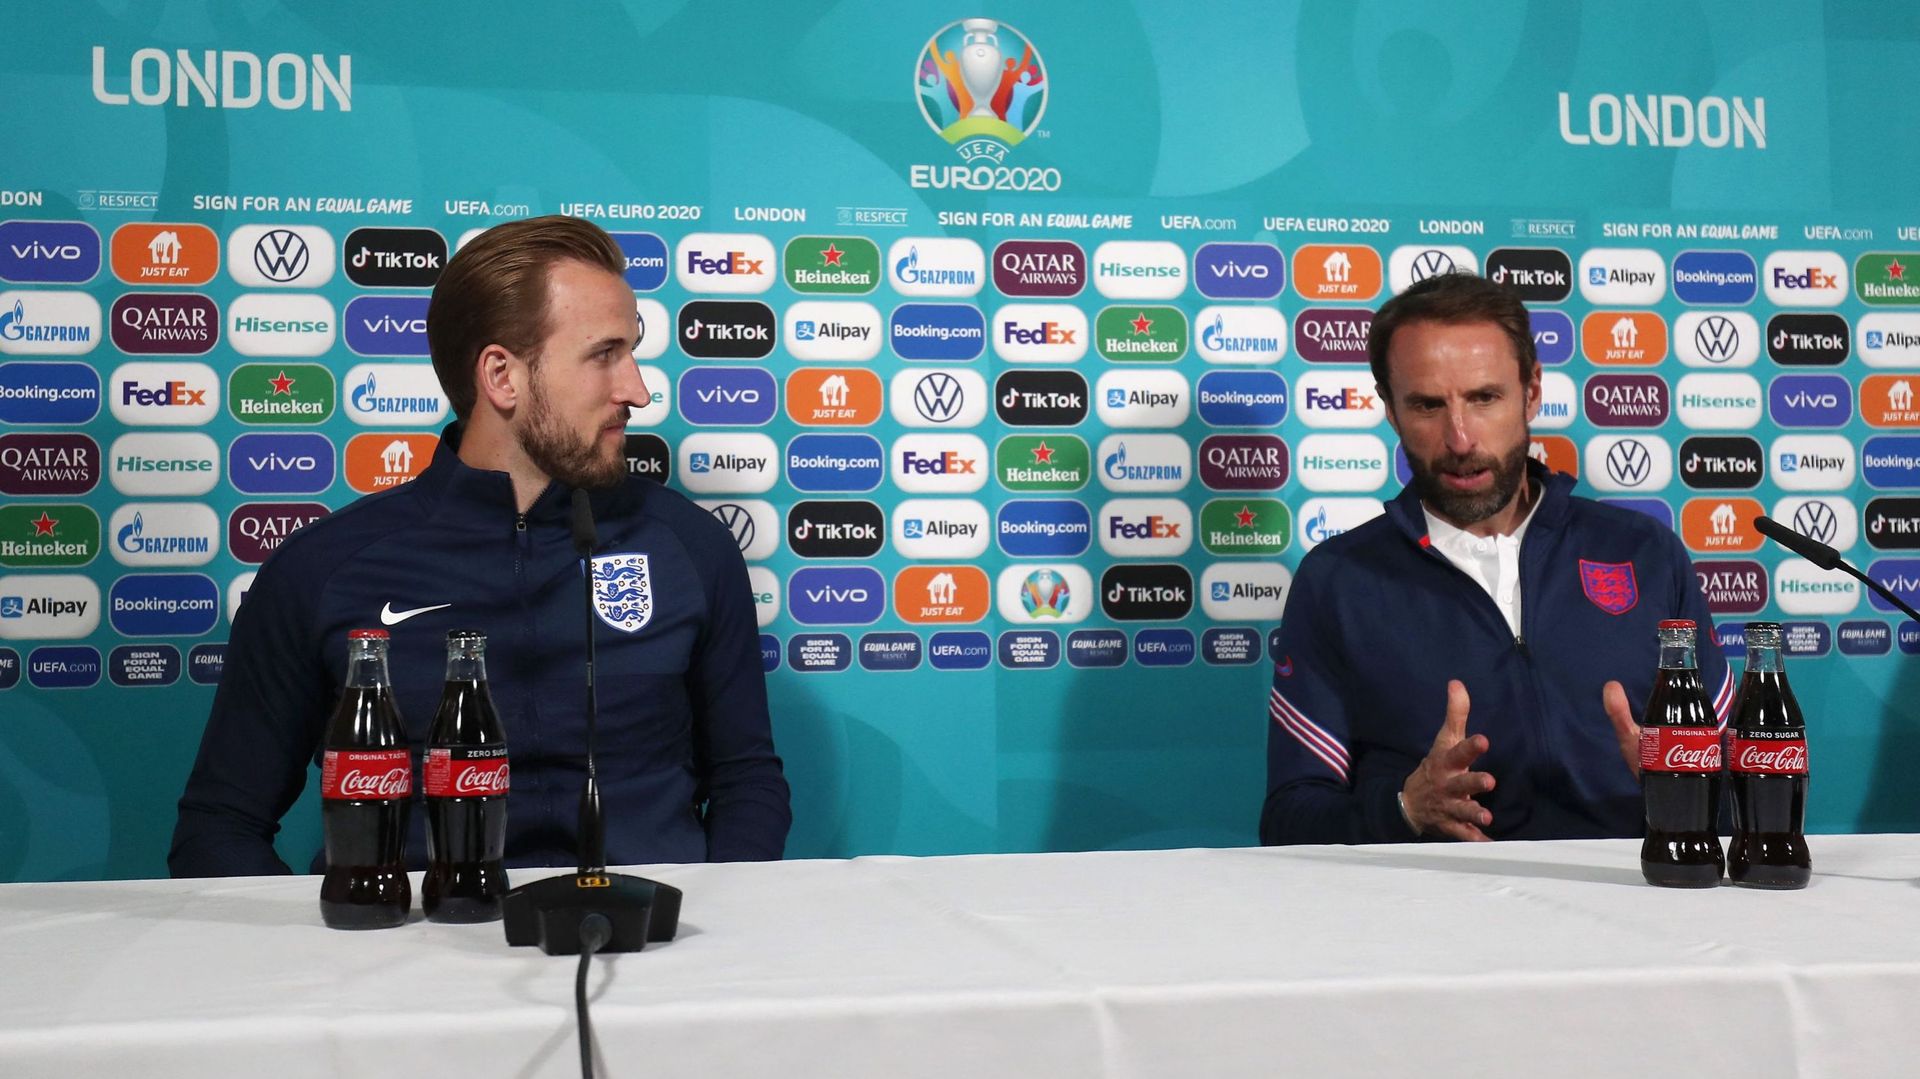 Le sélectionneur anglais Gareth Southgate a assuré que dimanche serait "un jour de match normal", malgré la finale de l’Euro contre l’Italie à Wembley, mais pour son attaquant Harry Kane, le but sera bien de "finir le job" et ramener le trophée.